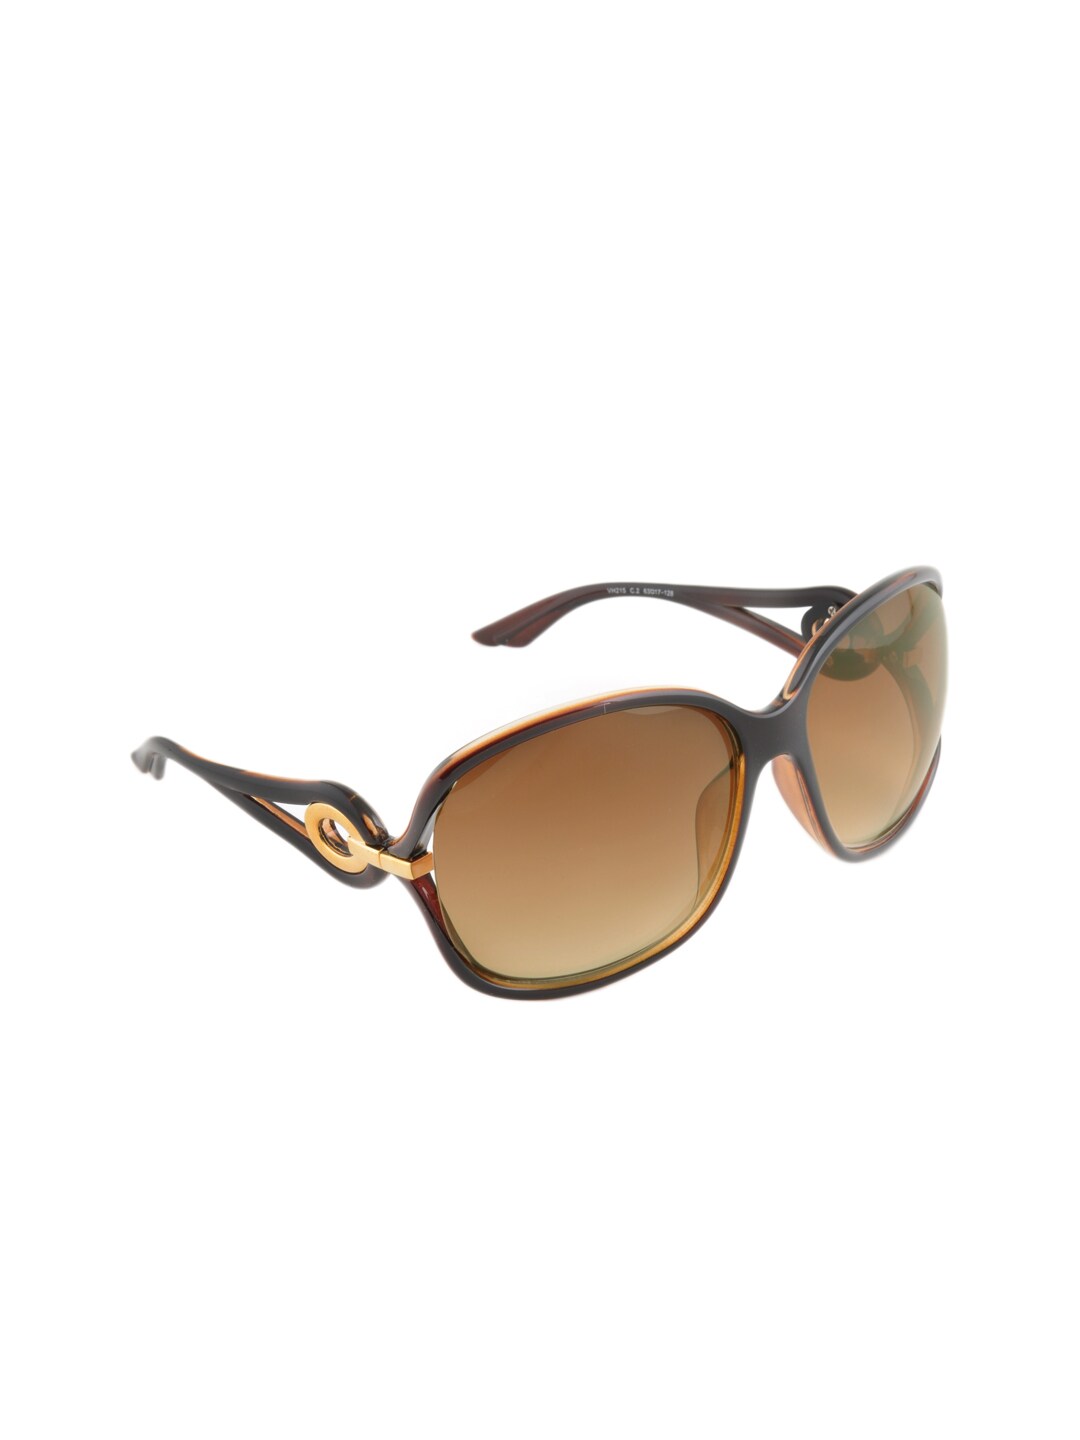 Van Heusen Women Brown Sunglasses VH215-C2